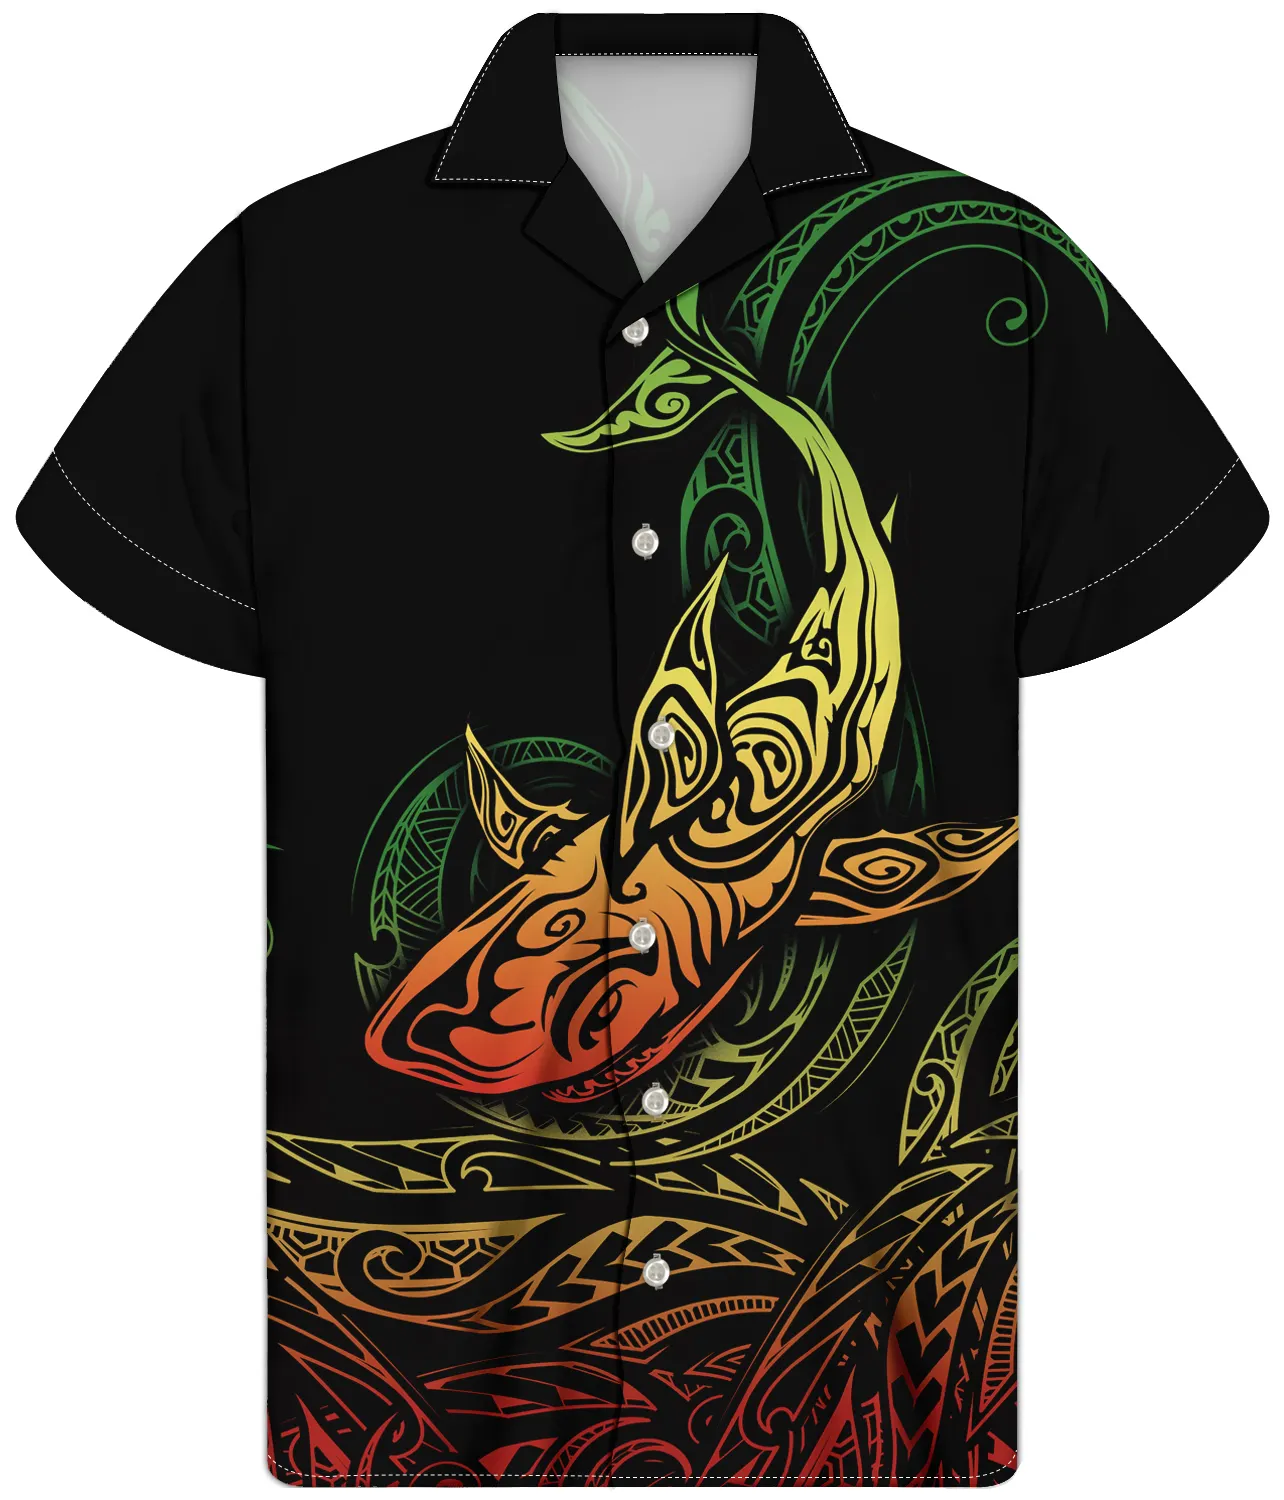 Siyah gömlek erkekler için koyu polinezya Tribal köpekbalığı güneş sembolü dövme kumaşlar erkekler yaz giyim erkekler için tropikal gömlek